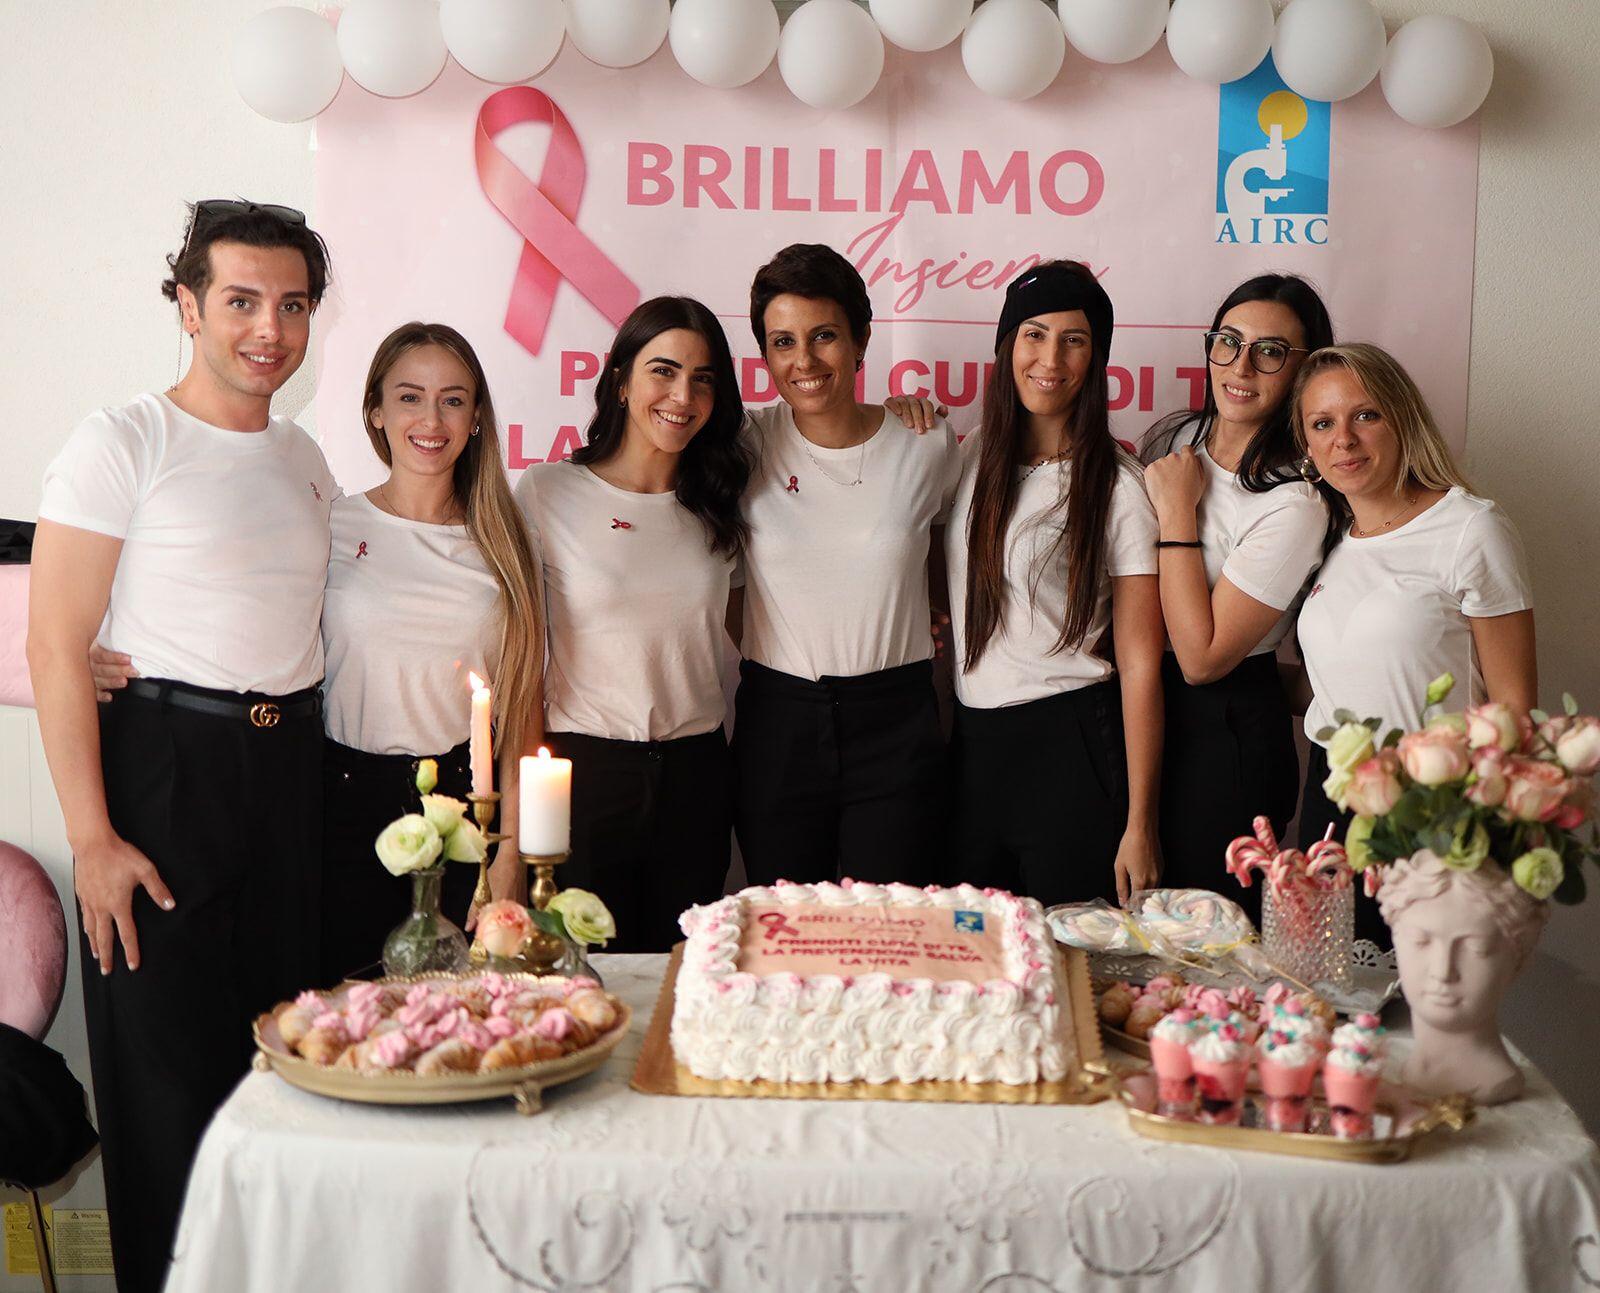 “Brilliamo Insieme”, ad Agropoli la campagna per sostenere l’Airc nella lotta al tumore al seno